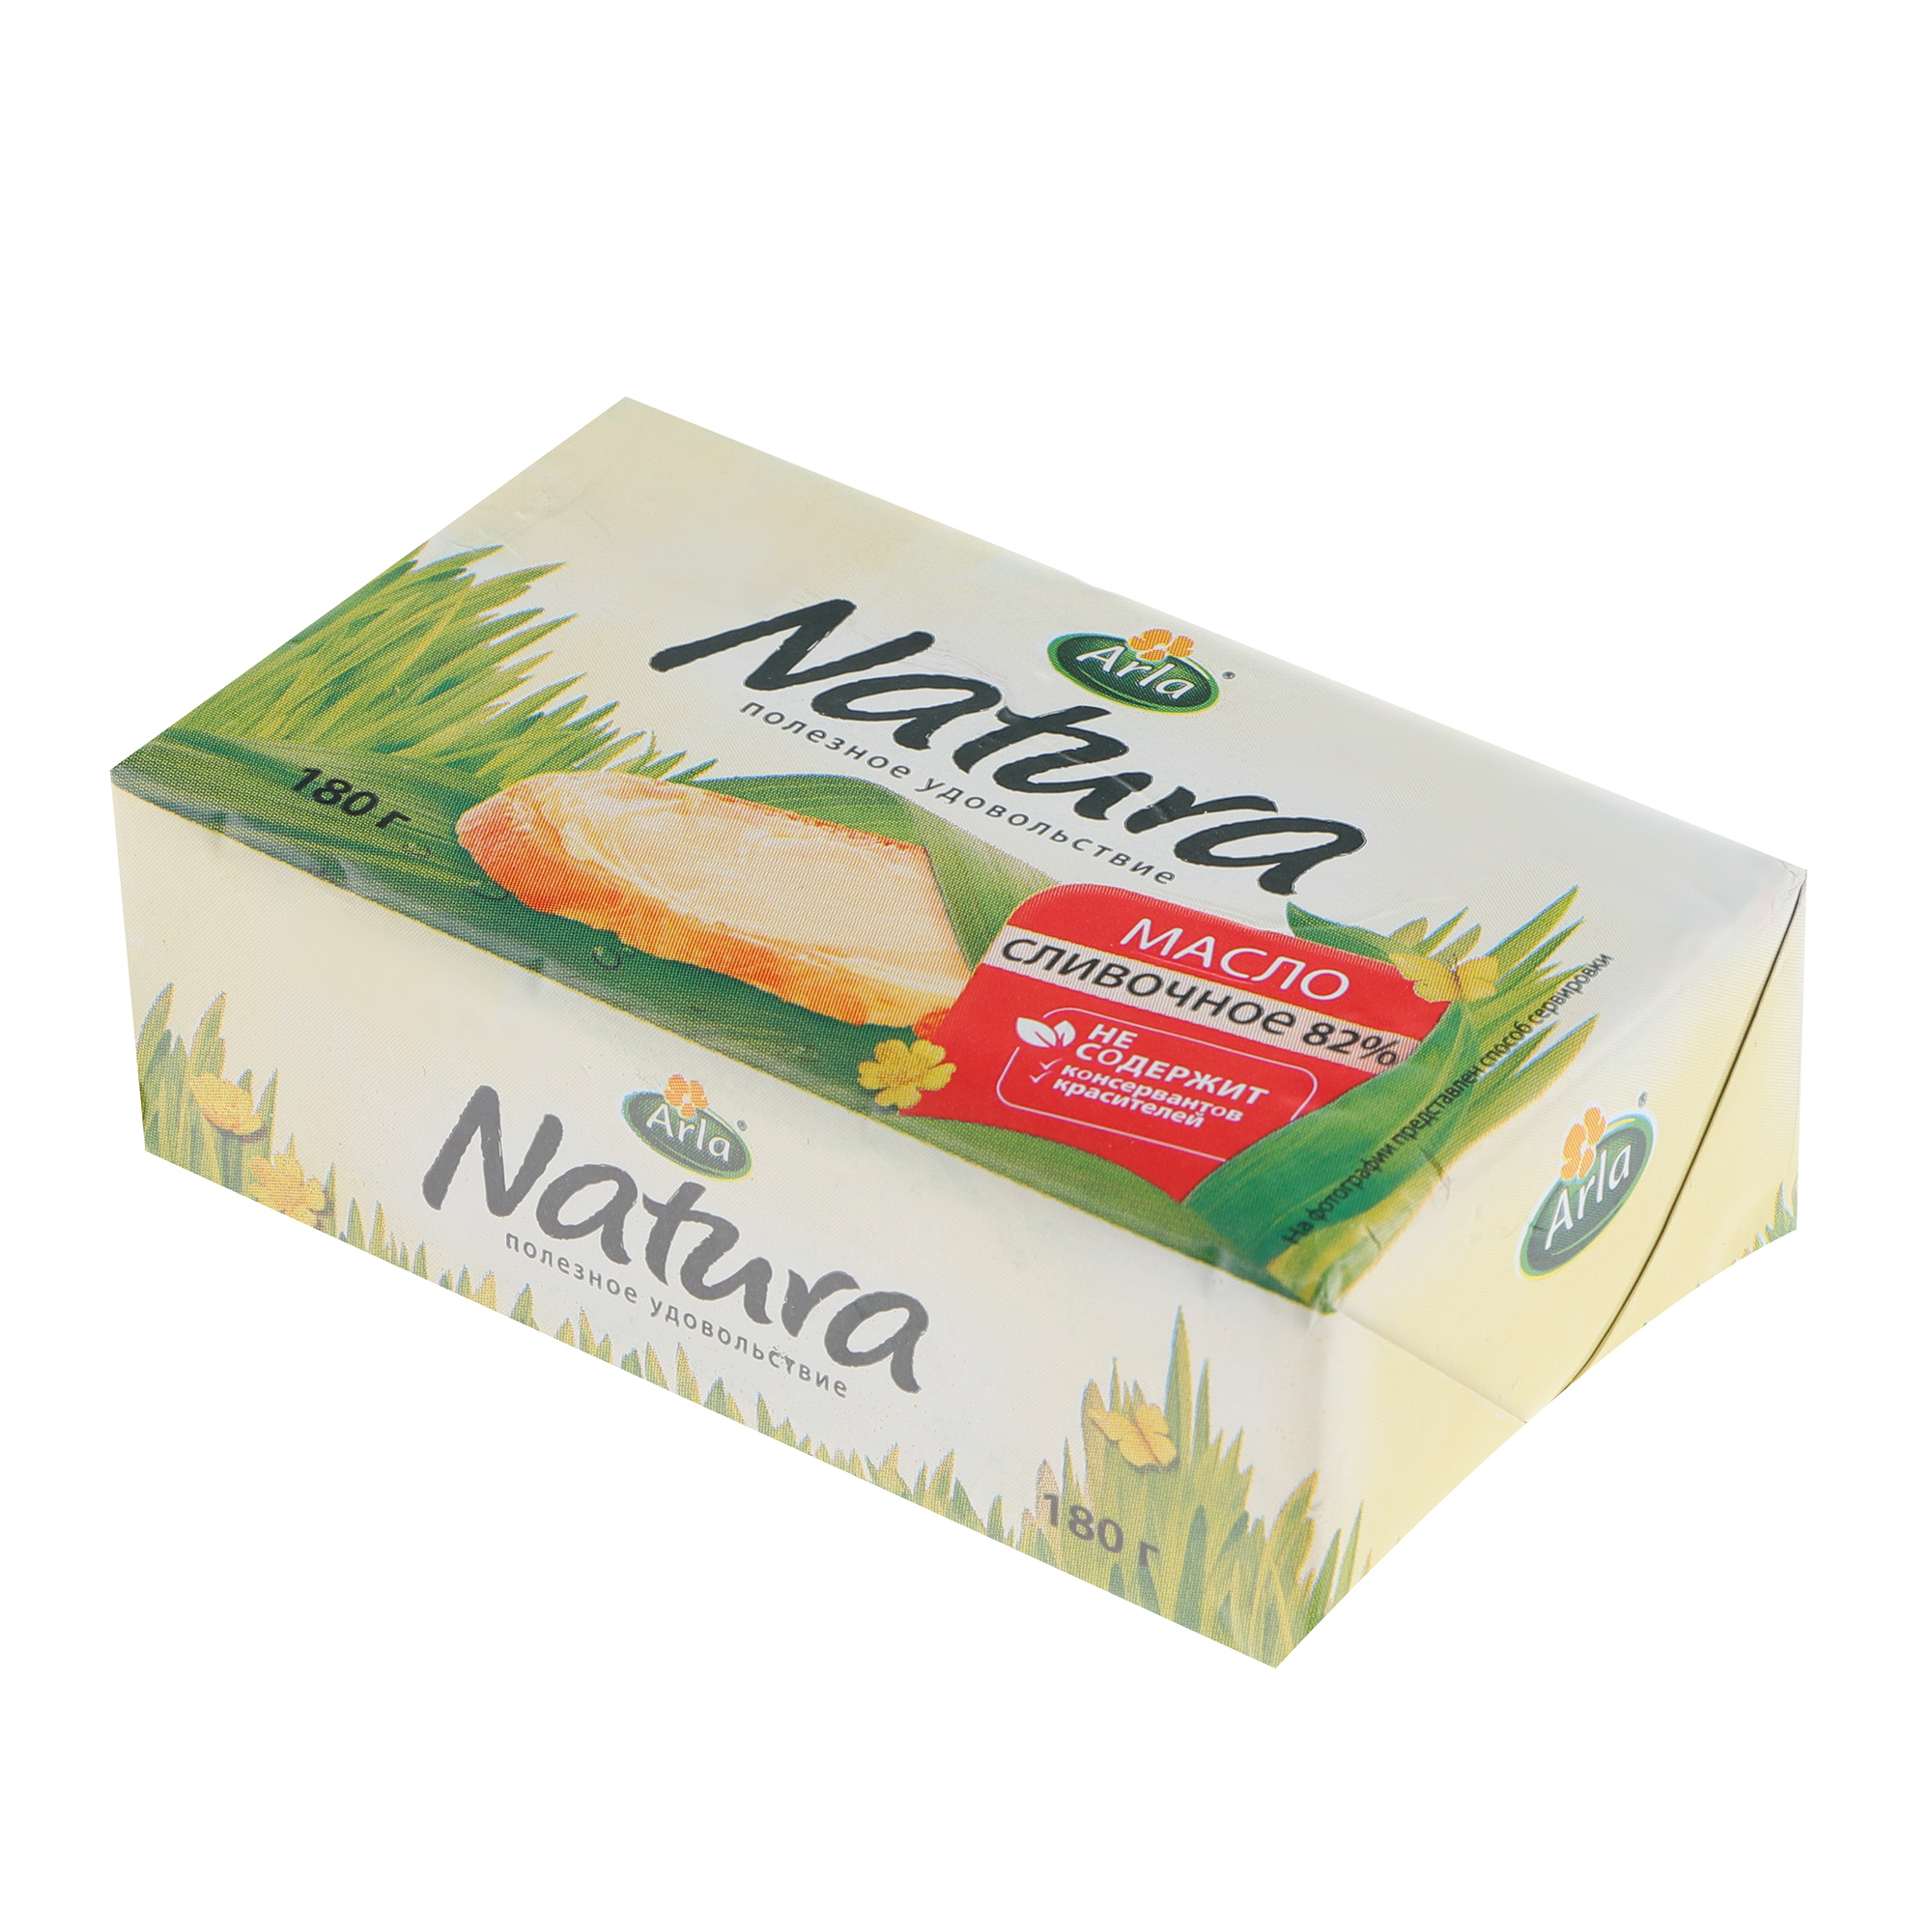 Масло сливочное Arla Natura 82% 180 г